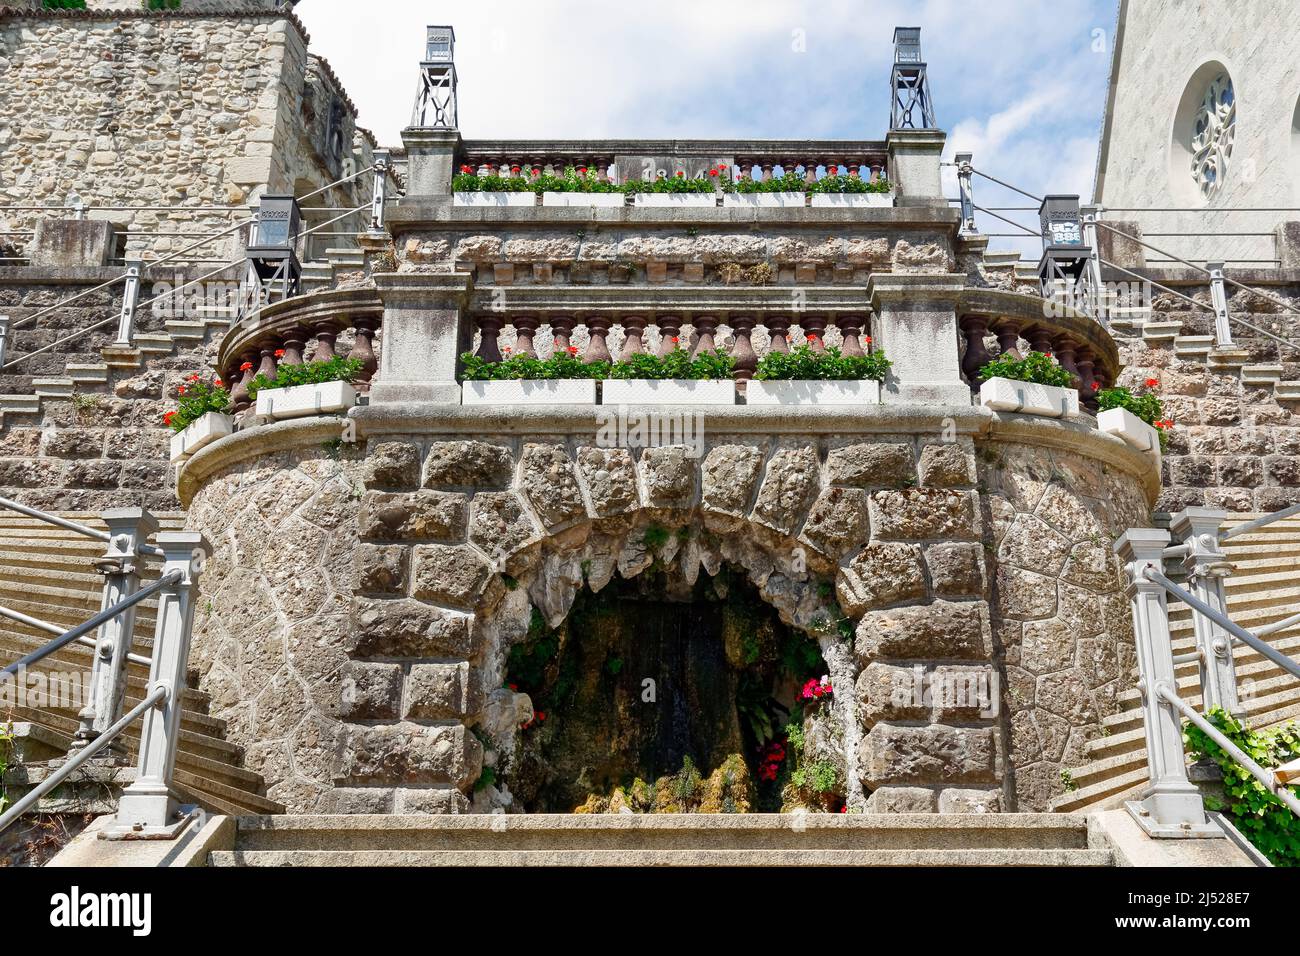 Rapperswil, Suiza - 10 de mayo de 2016: Fuente en forma de cueva es la decoración de la escalera que conduce desde la plaza de la ciudad hasta el castillo Foto de stock